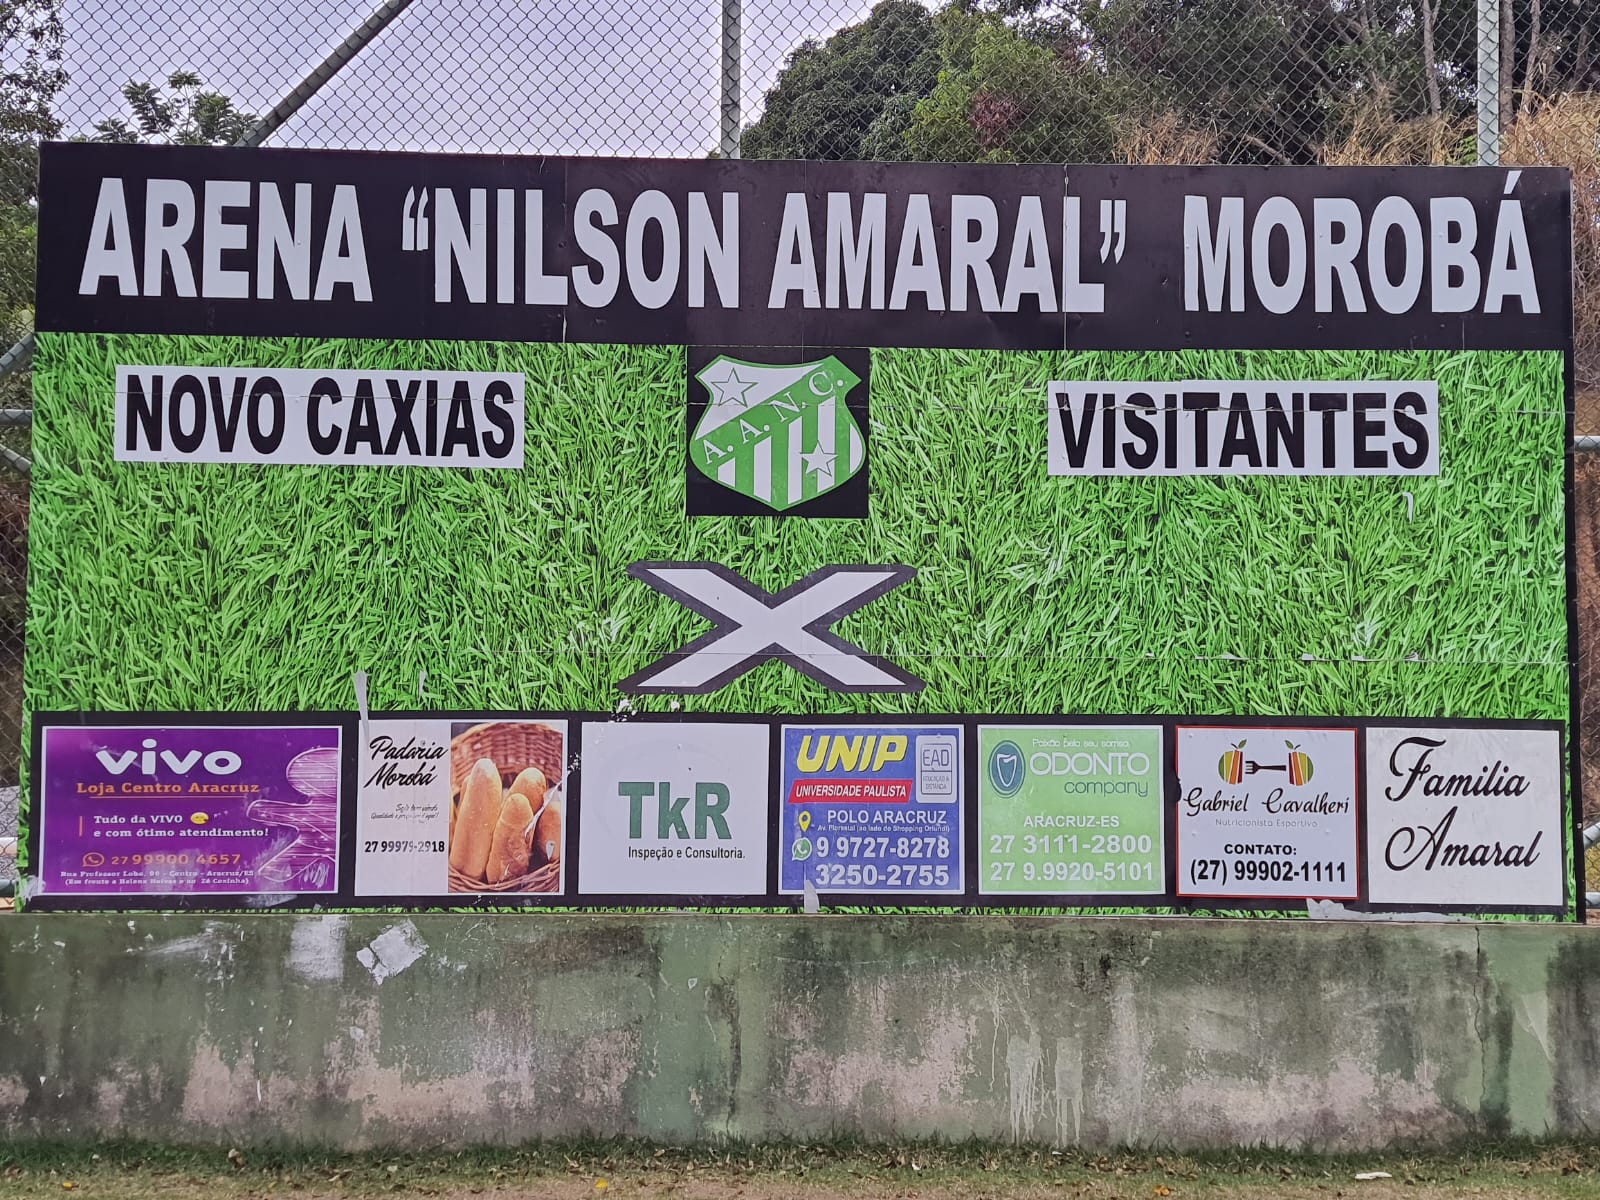 Ifes – Campus Vitória - Central de Imagens - Jifes 2023: Futebol de campo -  Aracruz x Itapina